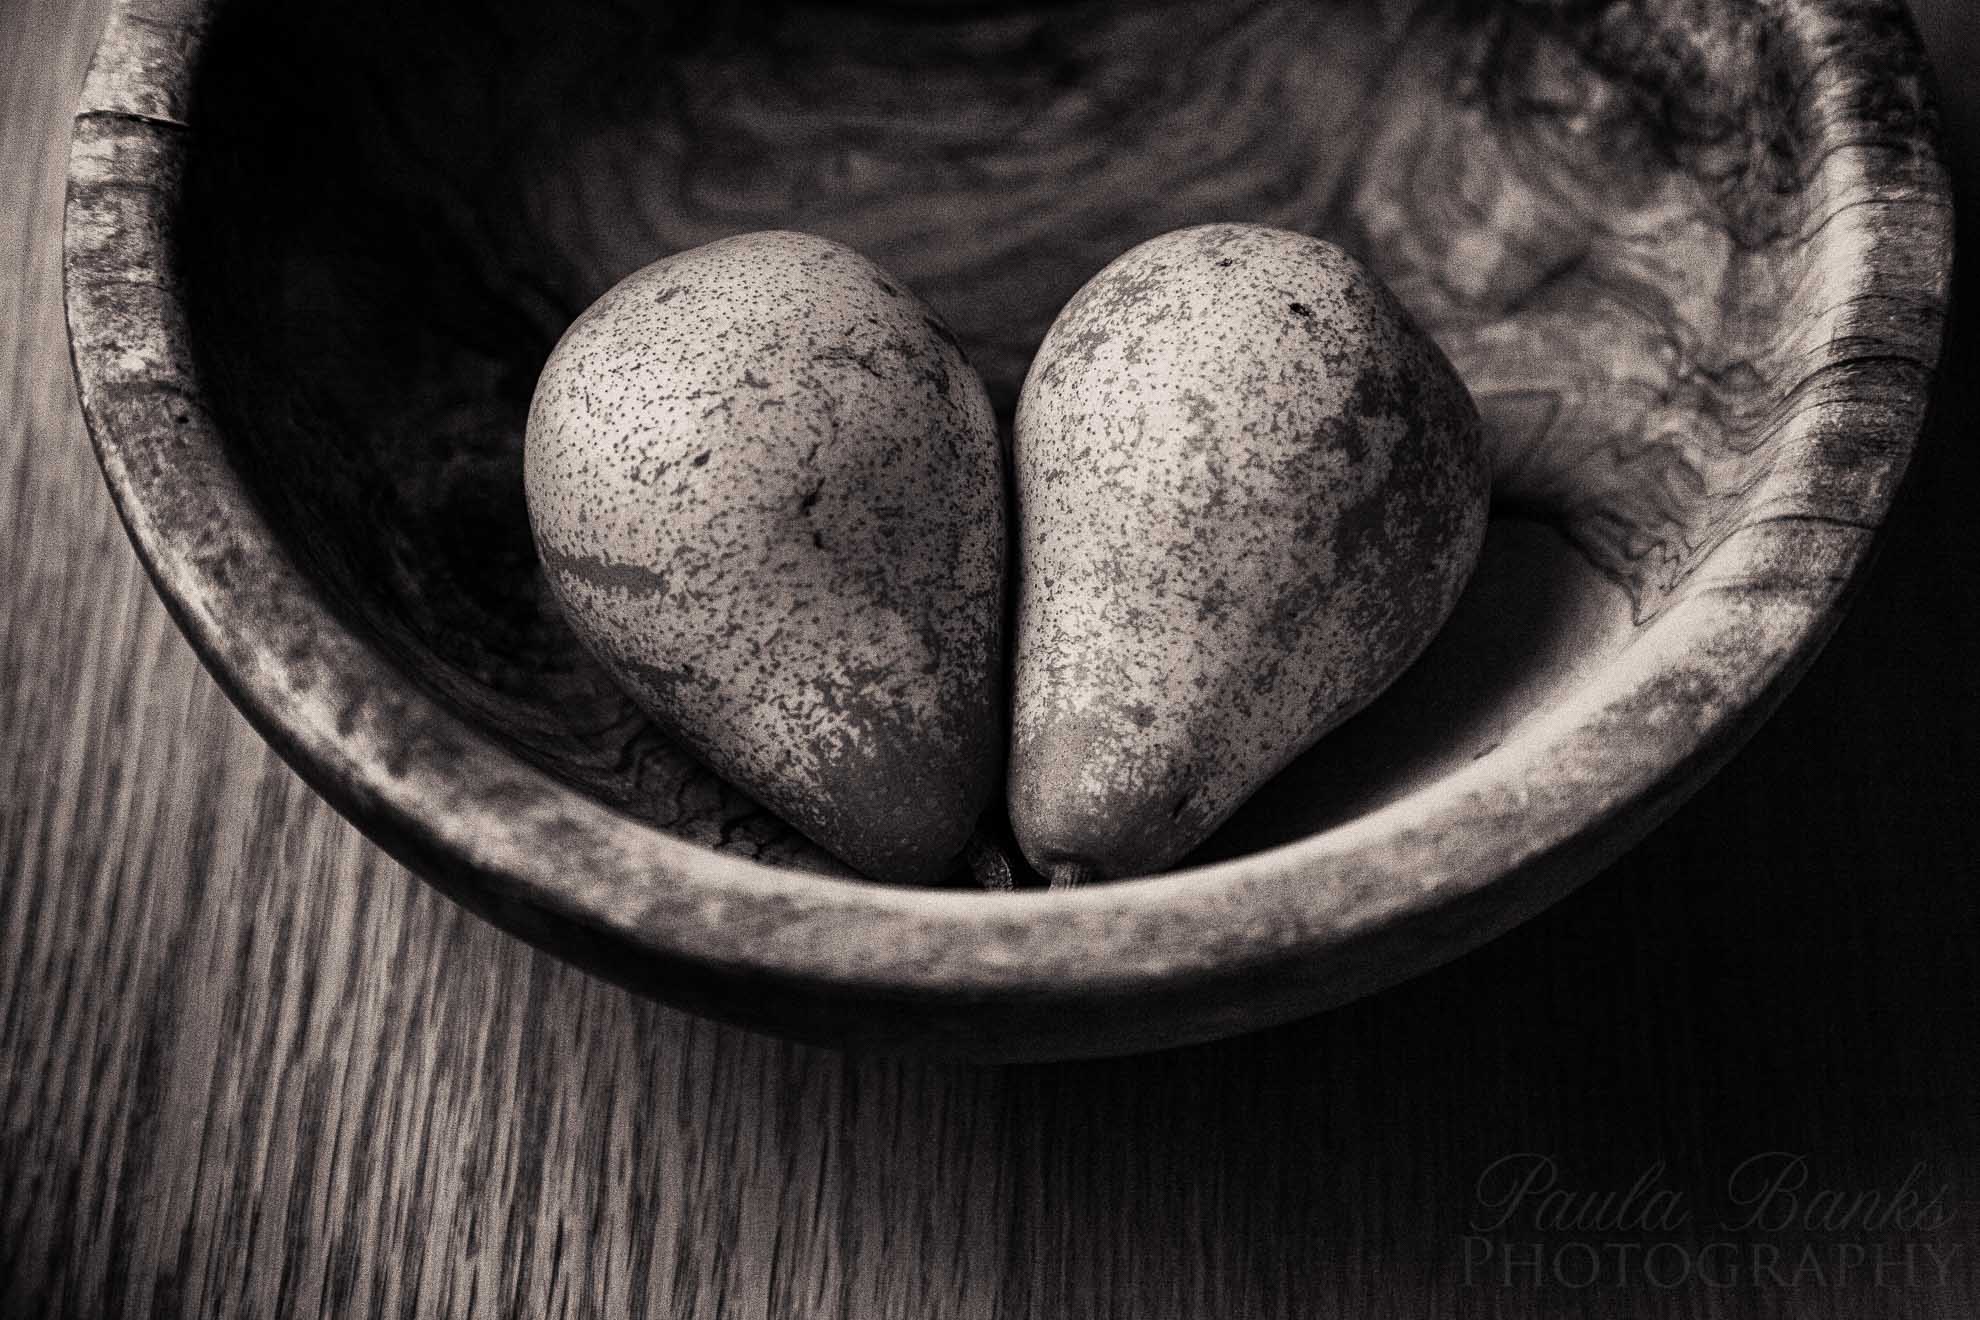 I {heart} pears